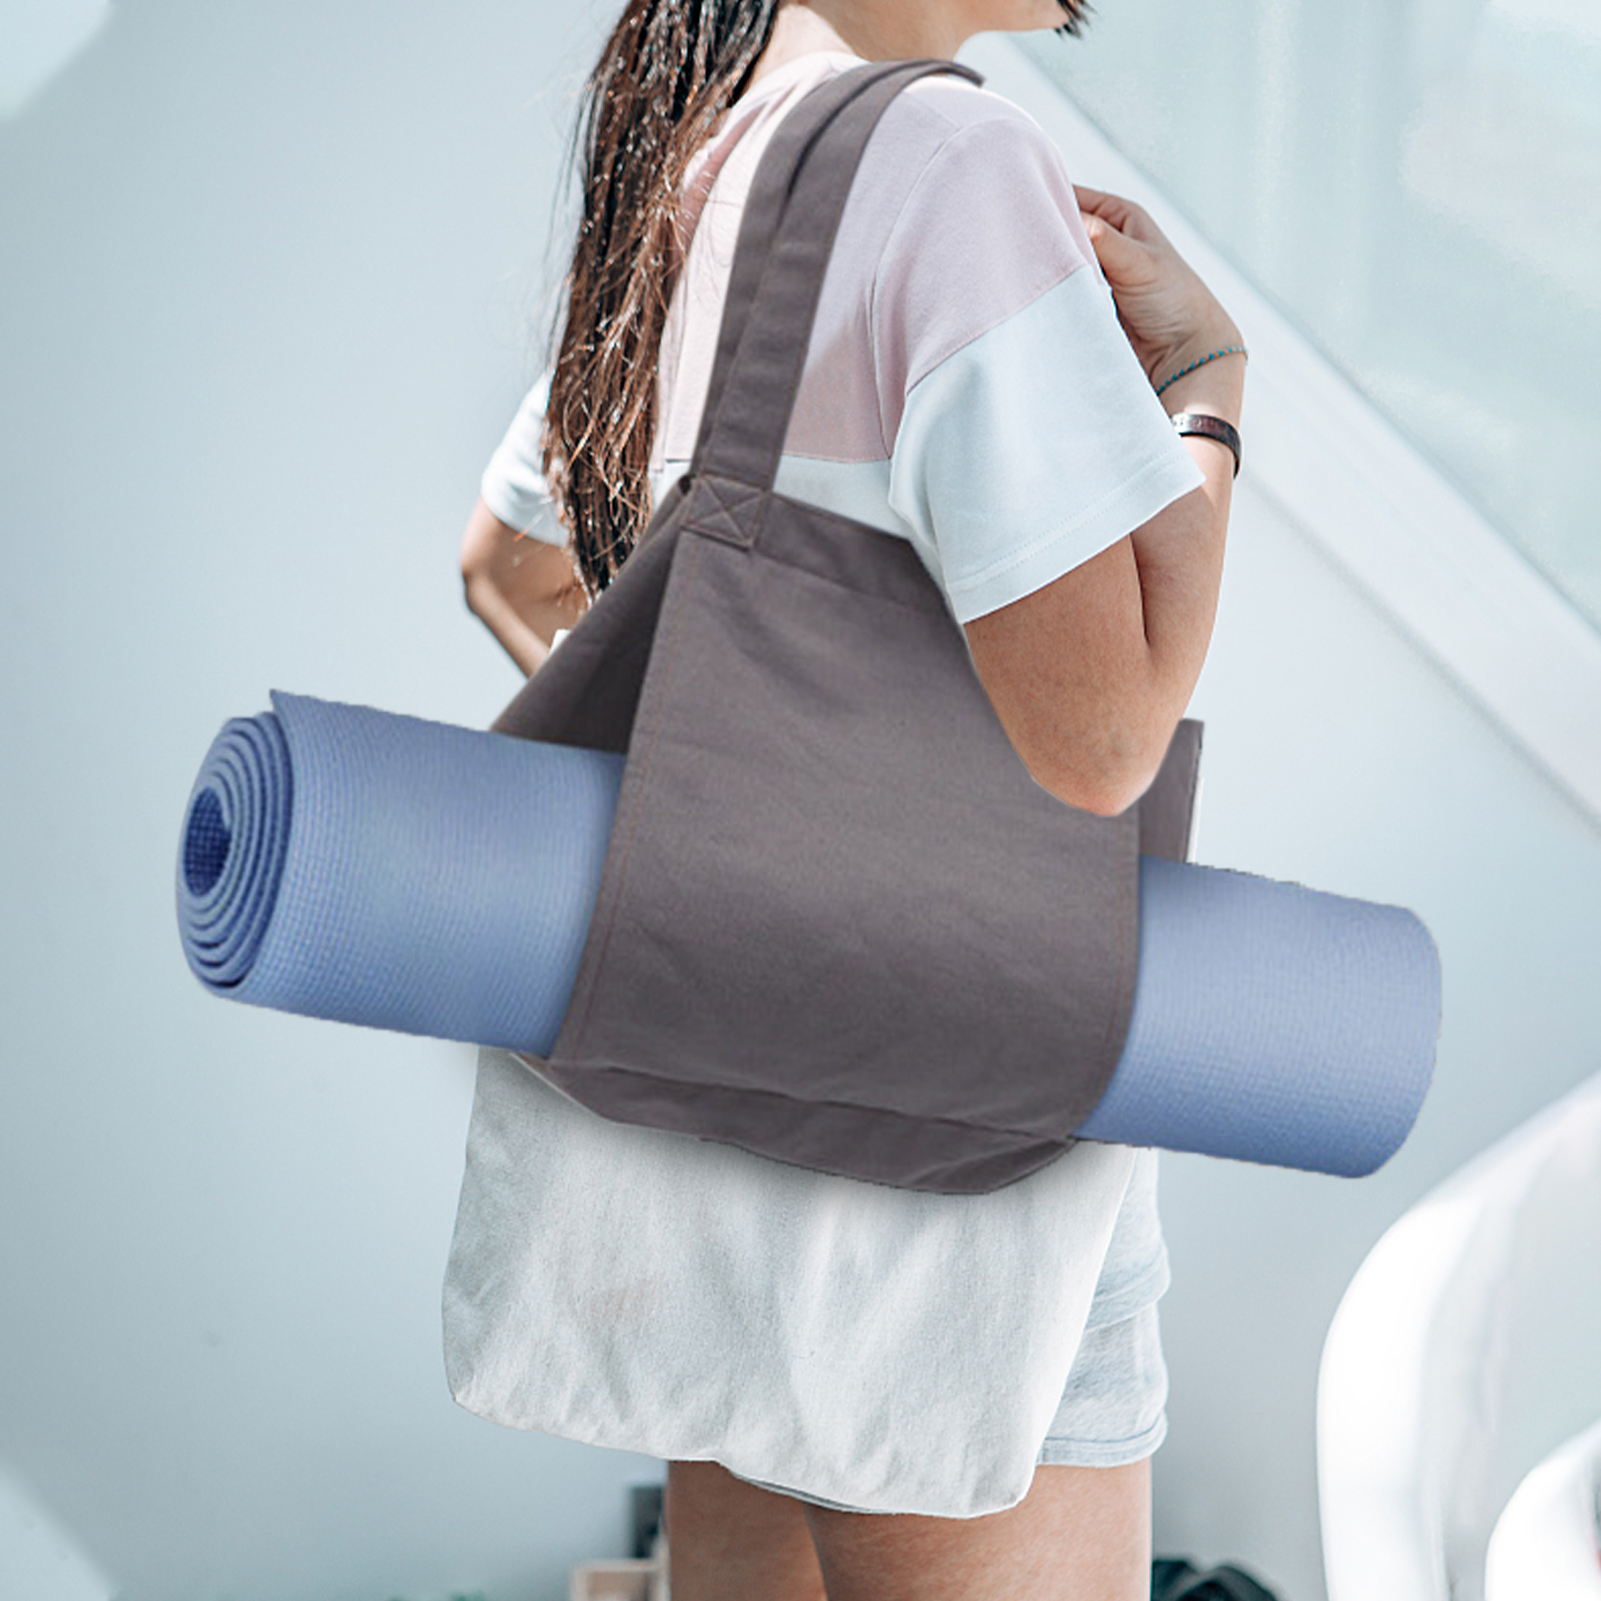 Sacchetti di sacchetti da yoga sacca da palestra con tappetino da yoga tappetino da yoga sacca a tracolla portatrice da yoga trasportare tutta la borsa per l'ufficio yoga pilates